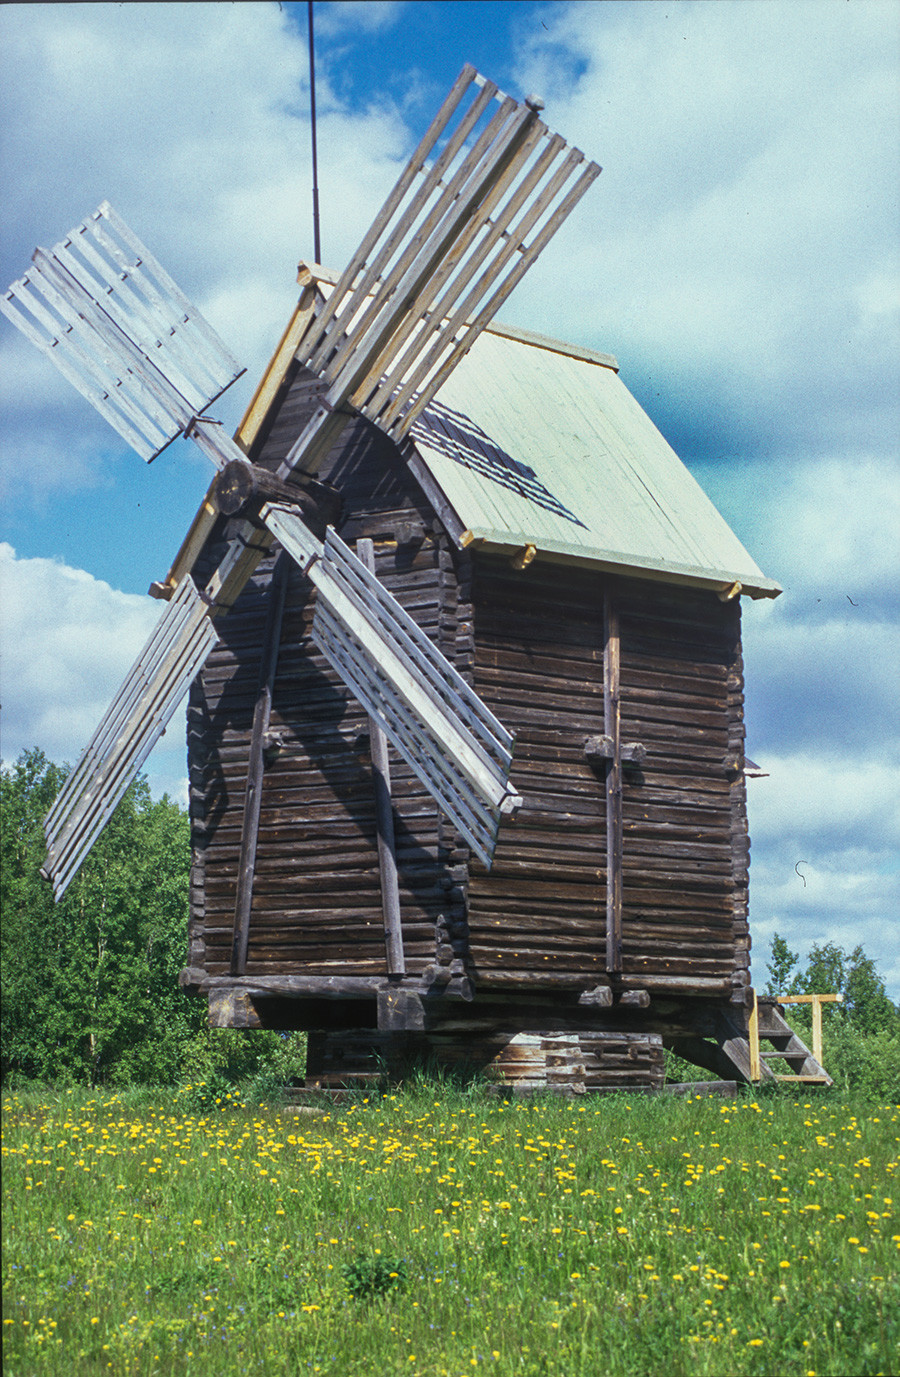 Musée Malié Korely. Moulin à vent sur pivot à l'origine situé dans le village de Kalgatchikha. La structure du moulin tourne sur une base basse